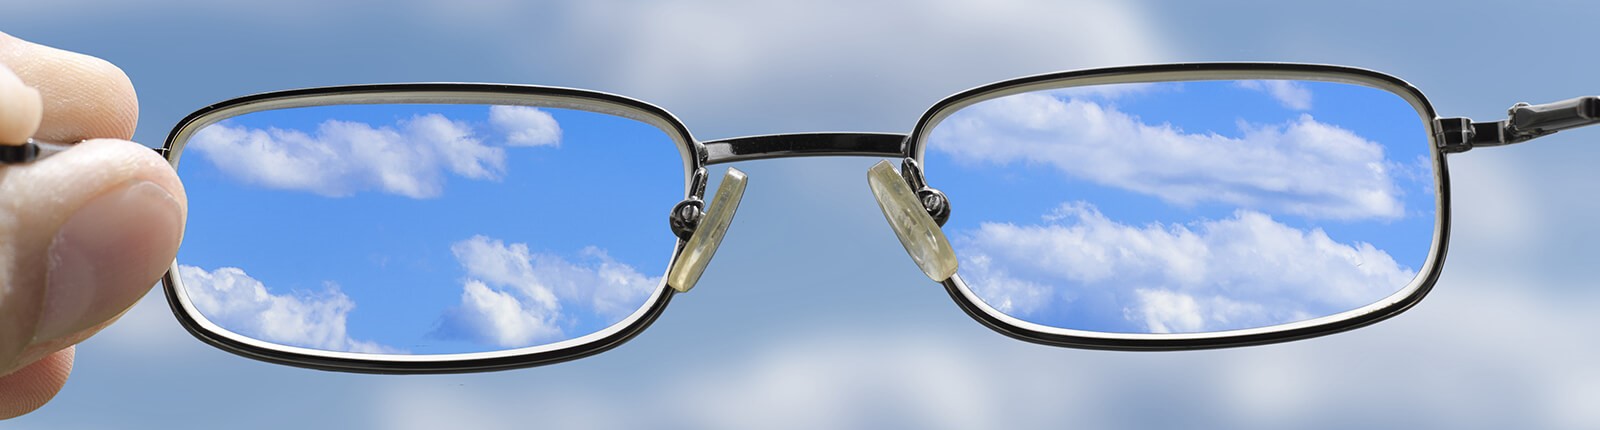 Blick auf die Wolken am Himmel durch eine hochgehaltene Brille.